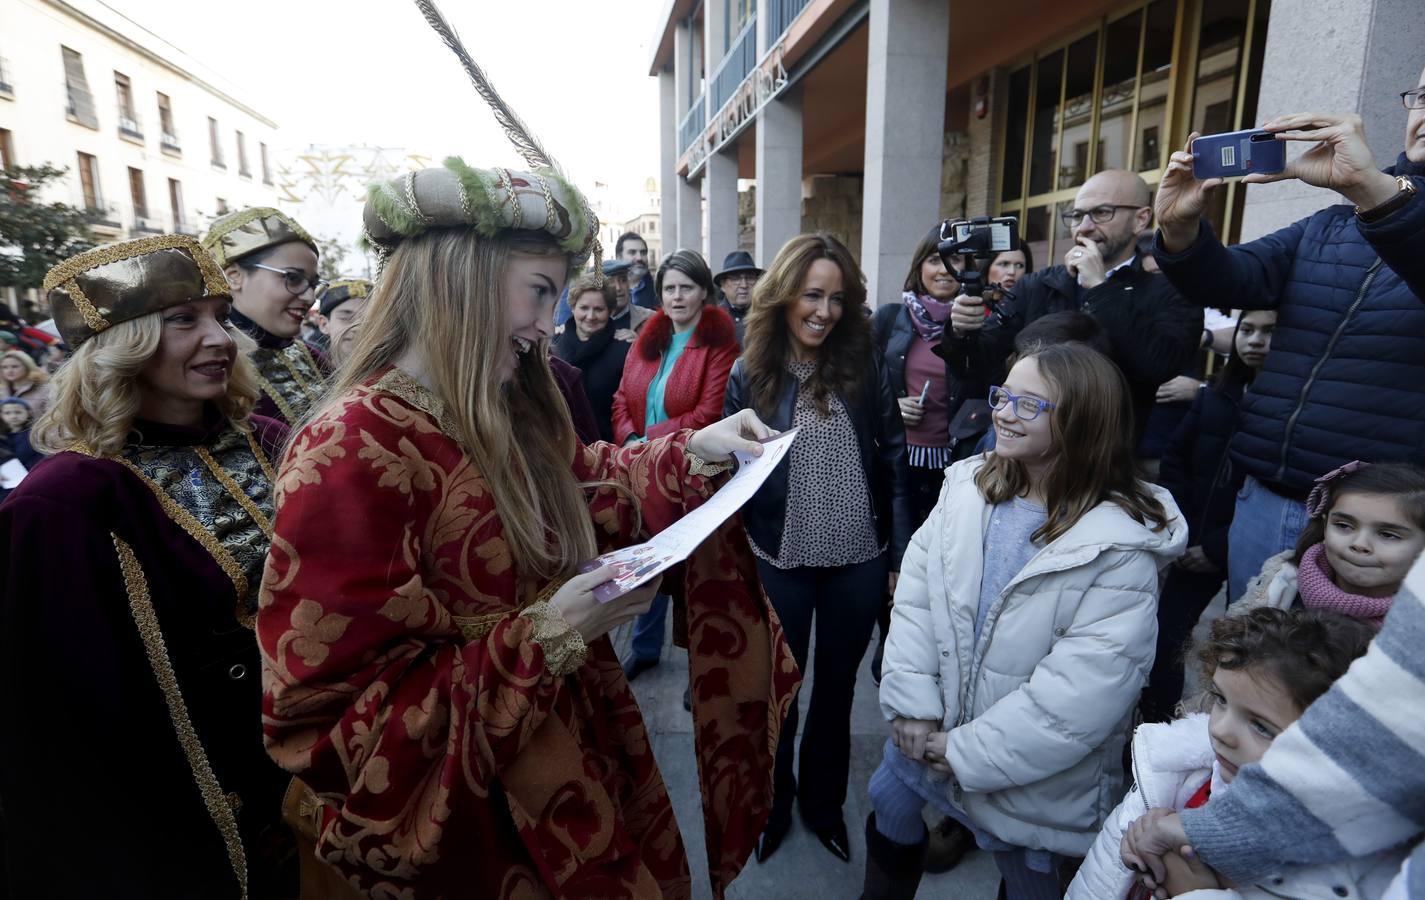 El desfile de la Cartera Real por la calles de Córdoba, en imágenes